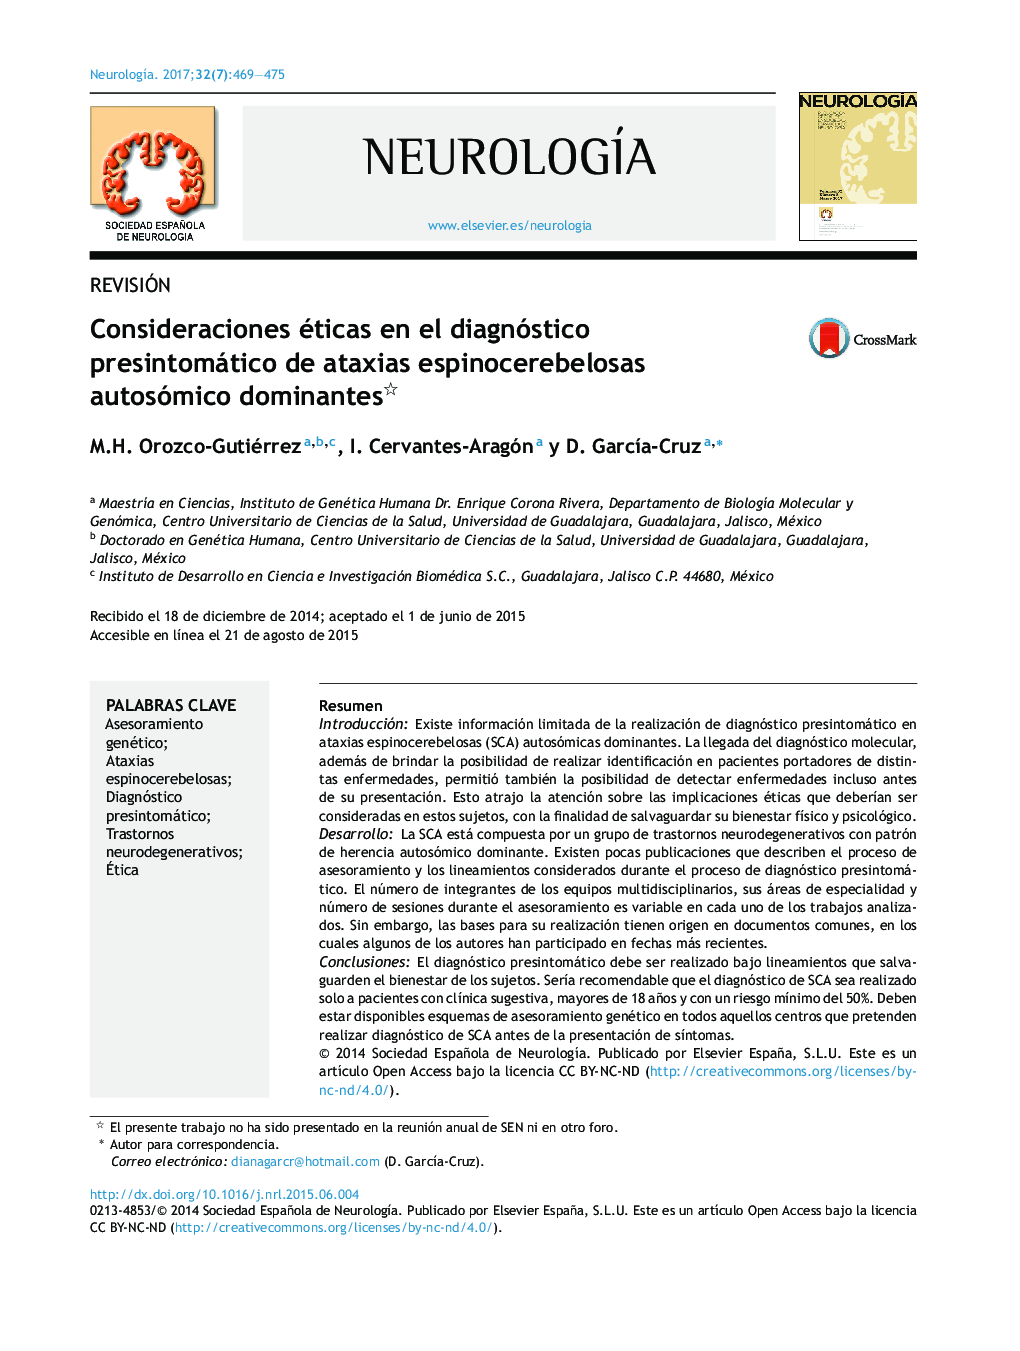 Consideraciones éticas en el diagnóstico presintomático de ataxias espinocerebelosas autosómico dominantes